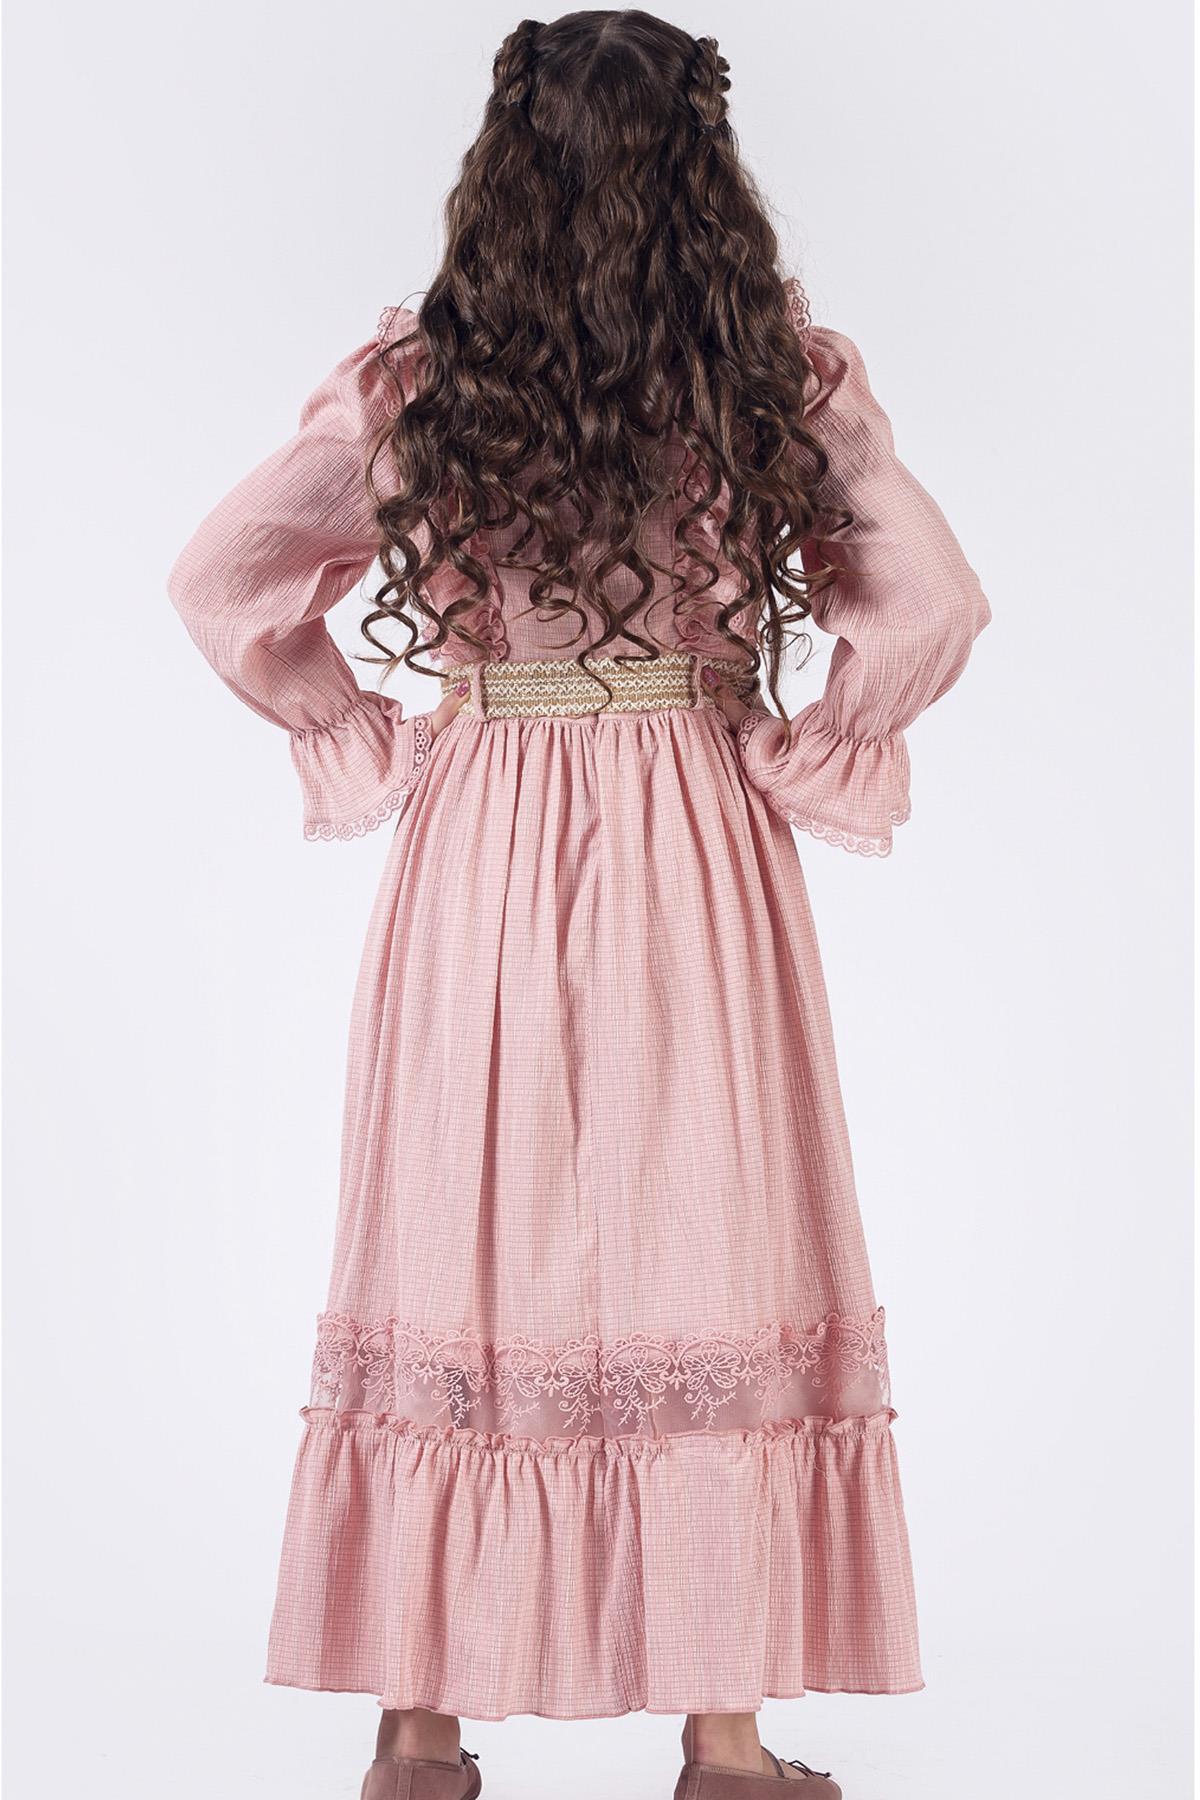 Fırfır Yakalı Boydan Kız Çocuk Elbise- Kemerli